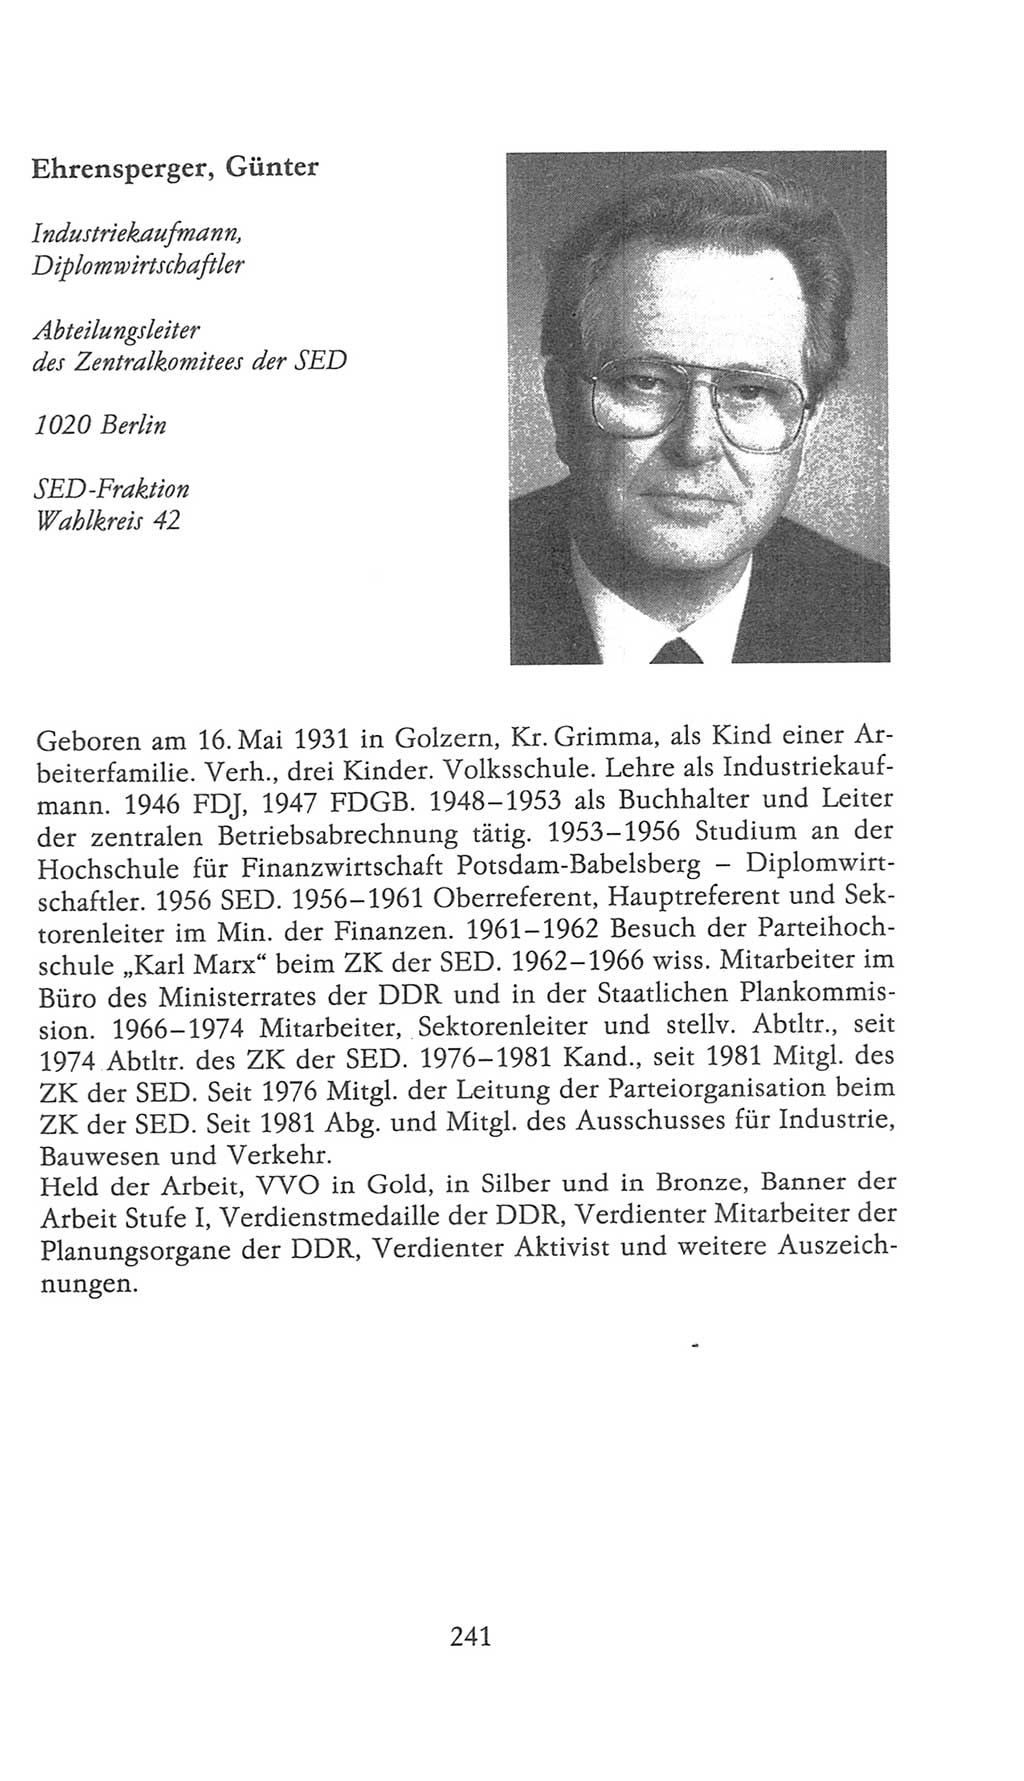 Volkskammer (VK) der Deutschen Demokratischen Republik (DDR), 9. Wahlperiode 1986-1990, Seite 241 (VK. DDR 9. WP. 1986-1990, S. 241)